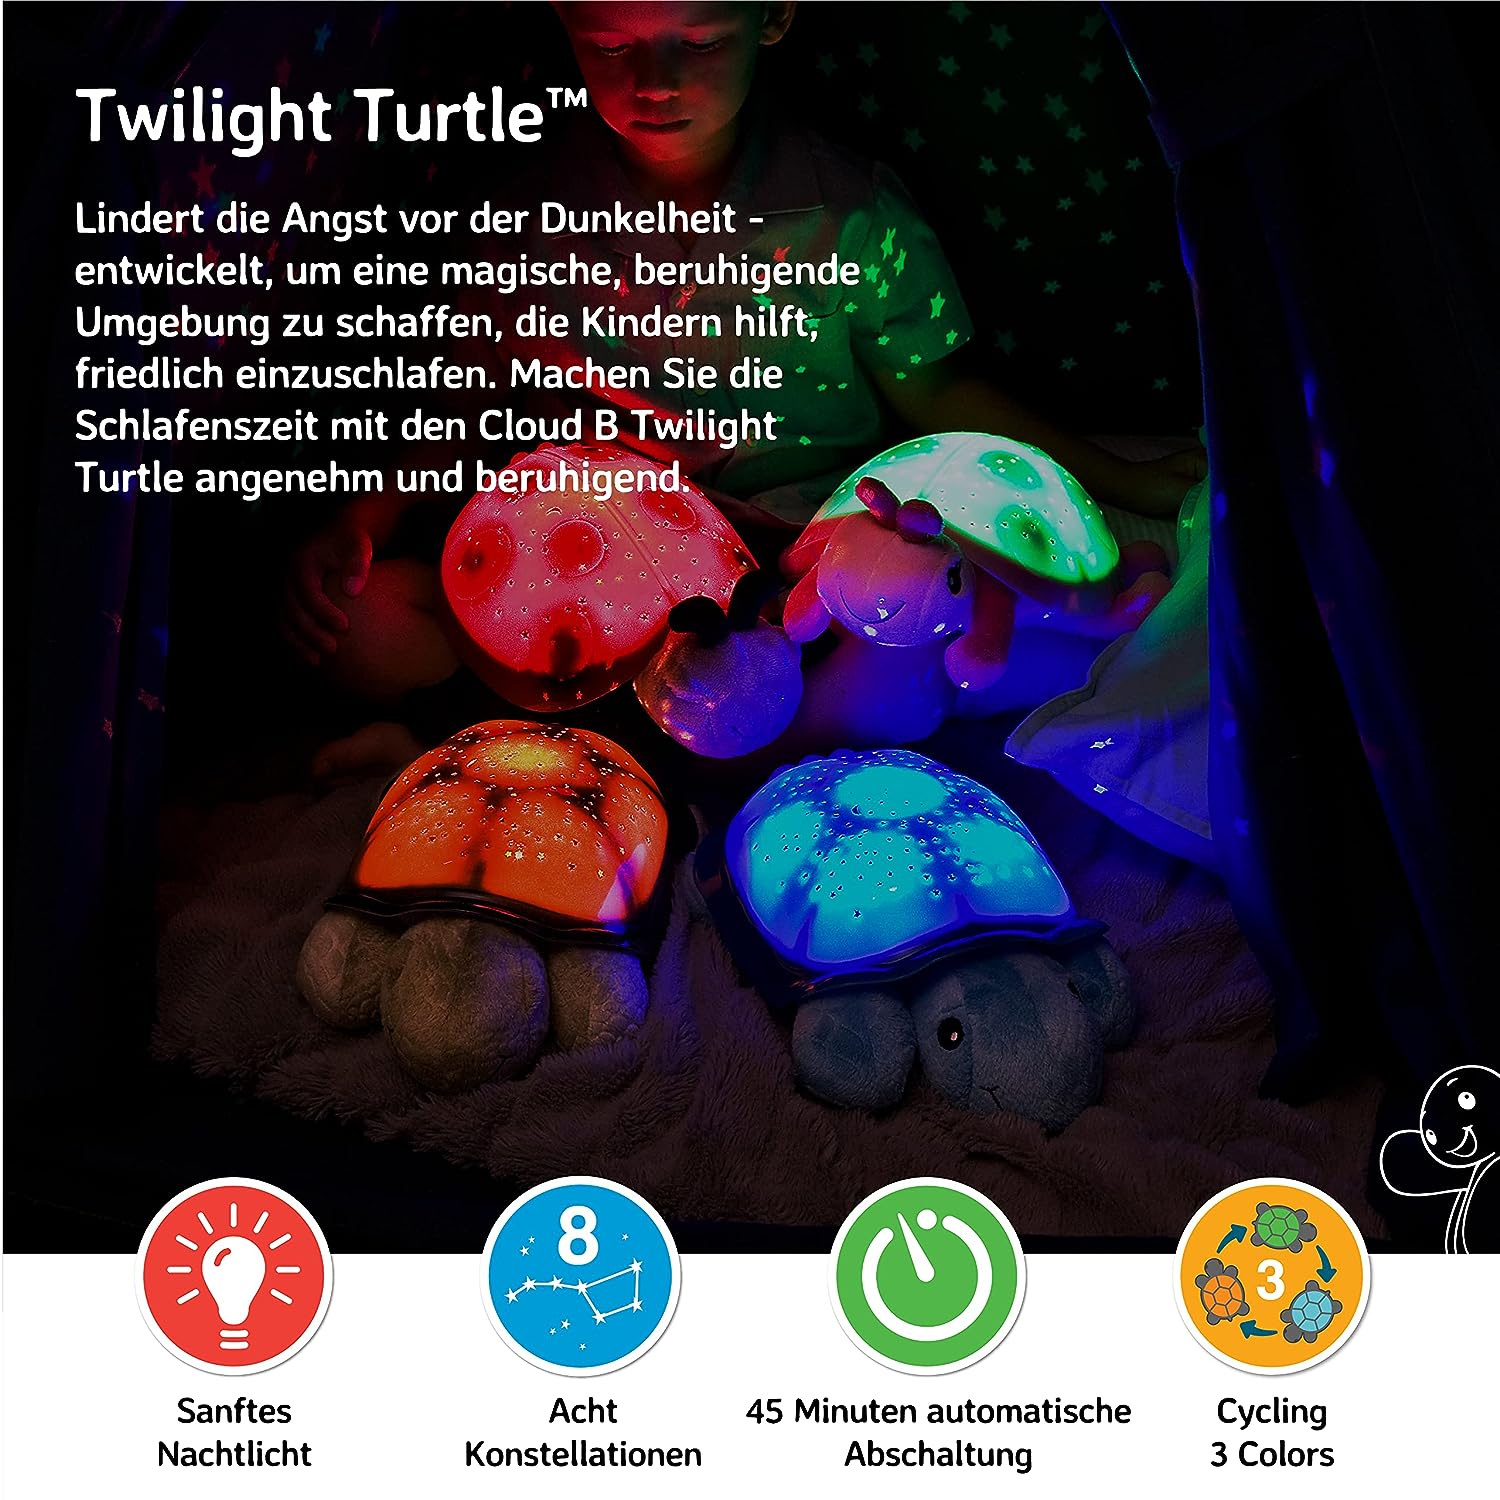 Twilight-Turtle-Nachtlicht-berlindeluxe-gruen-panzer